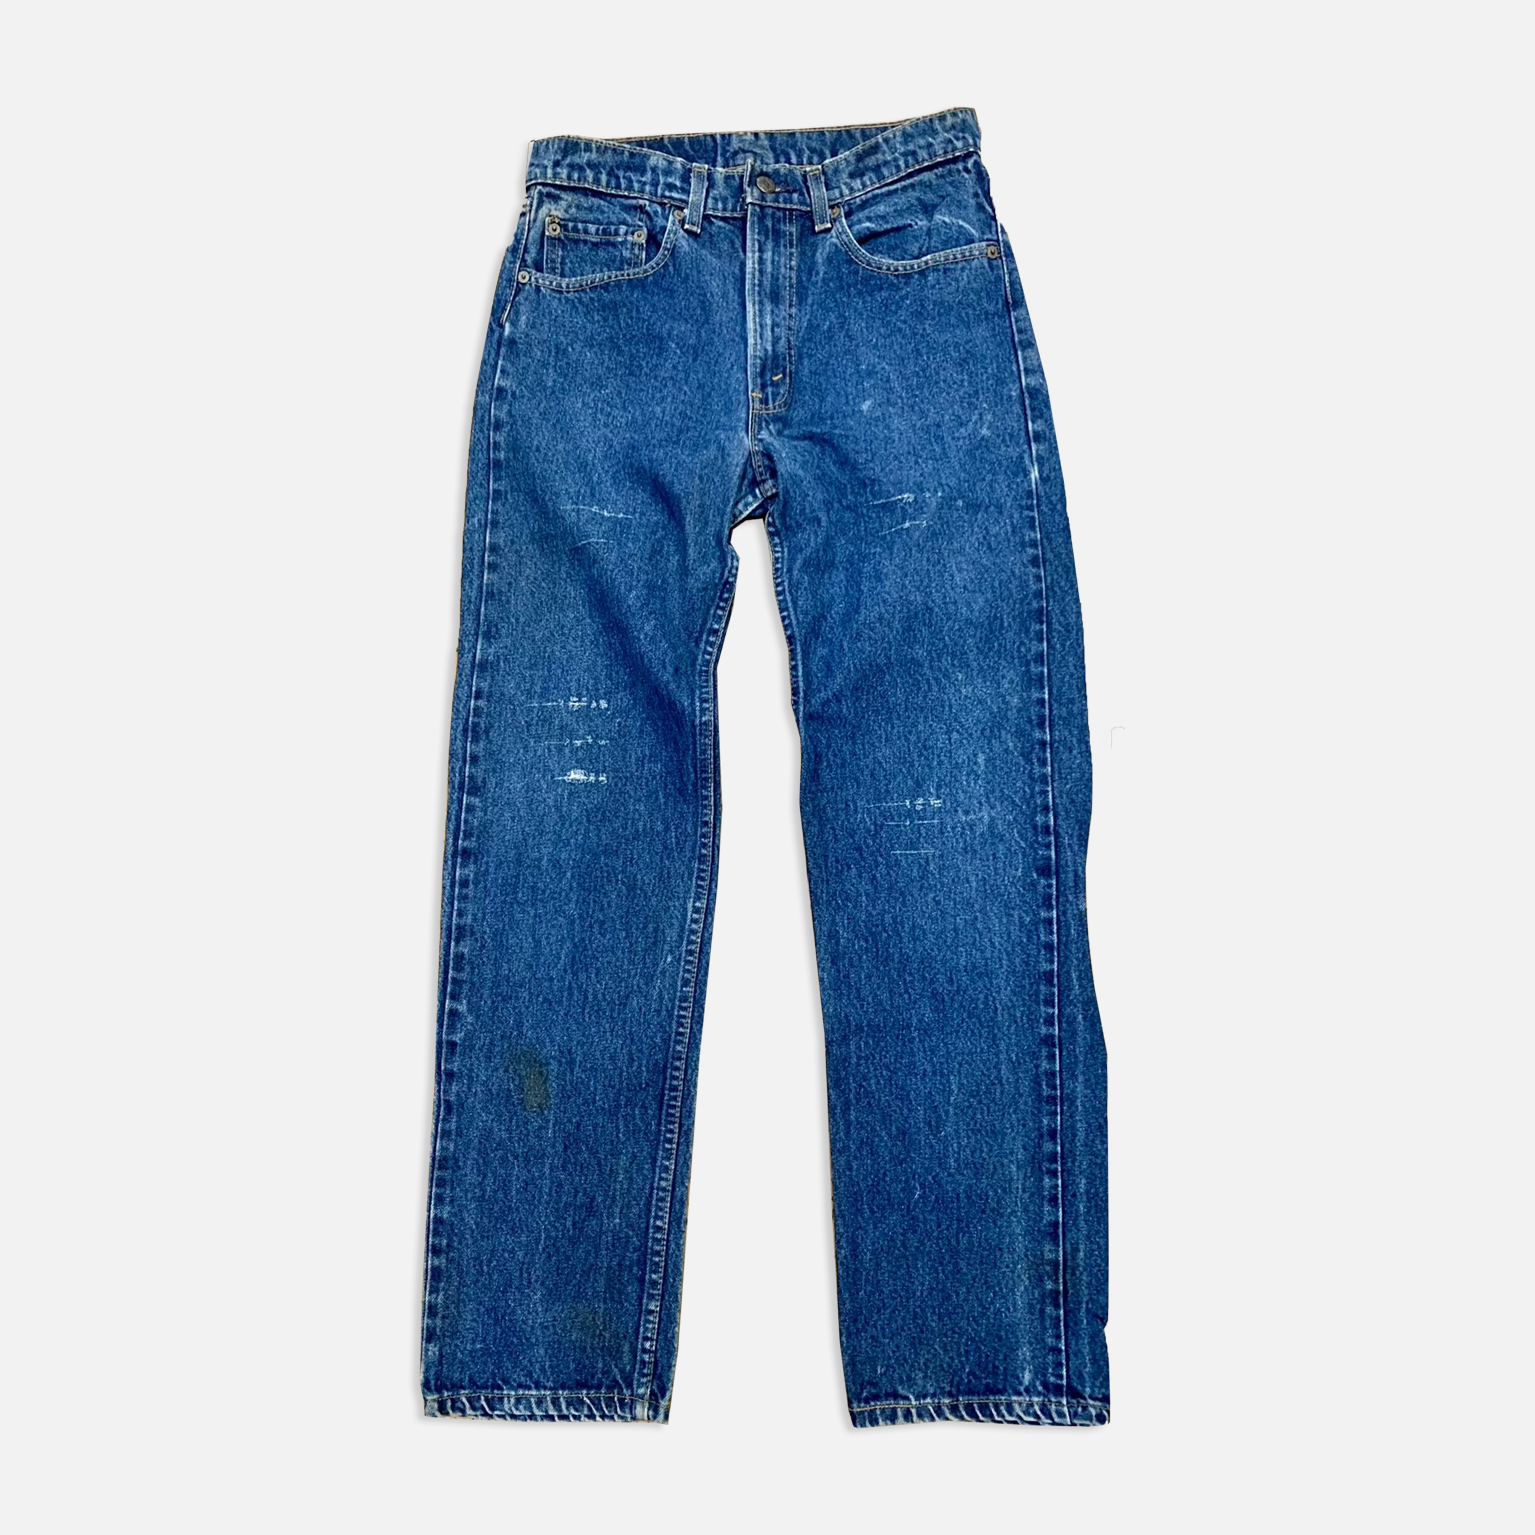 Vintage Levi’s 505 Denim Jeans